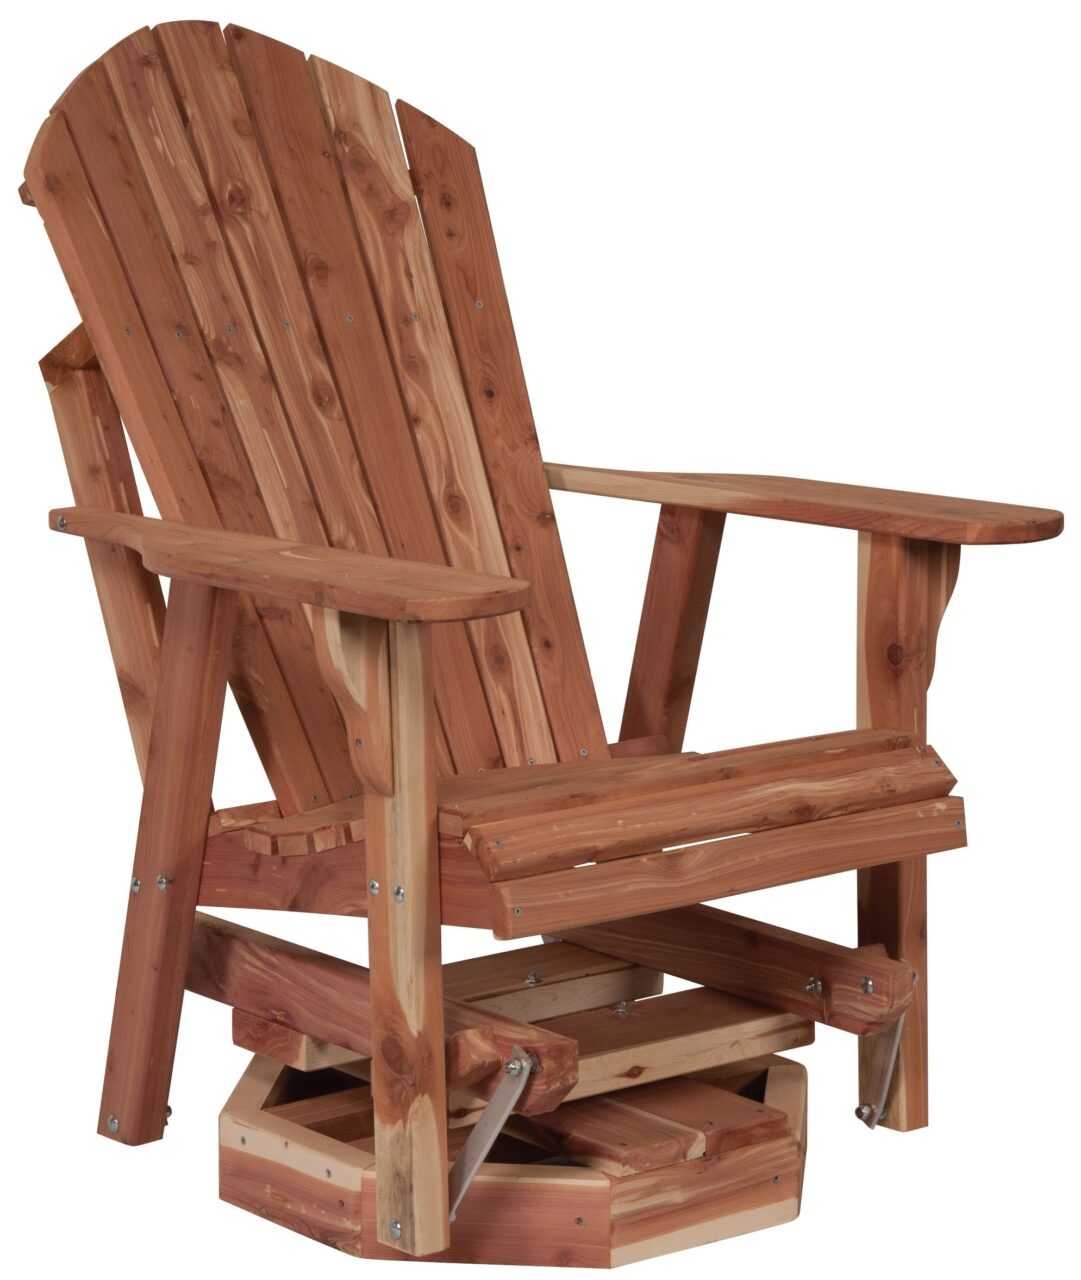 Пошаговое изготовление простого кресла-маятника из дерева или металла 7 - ДиванеТТо